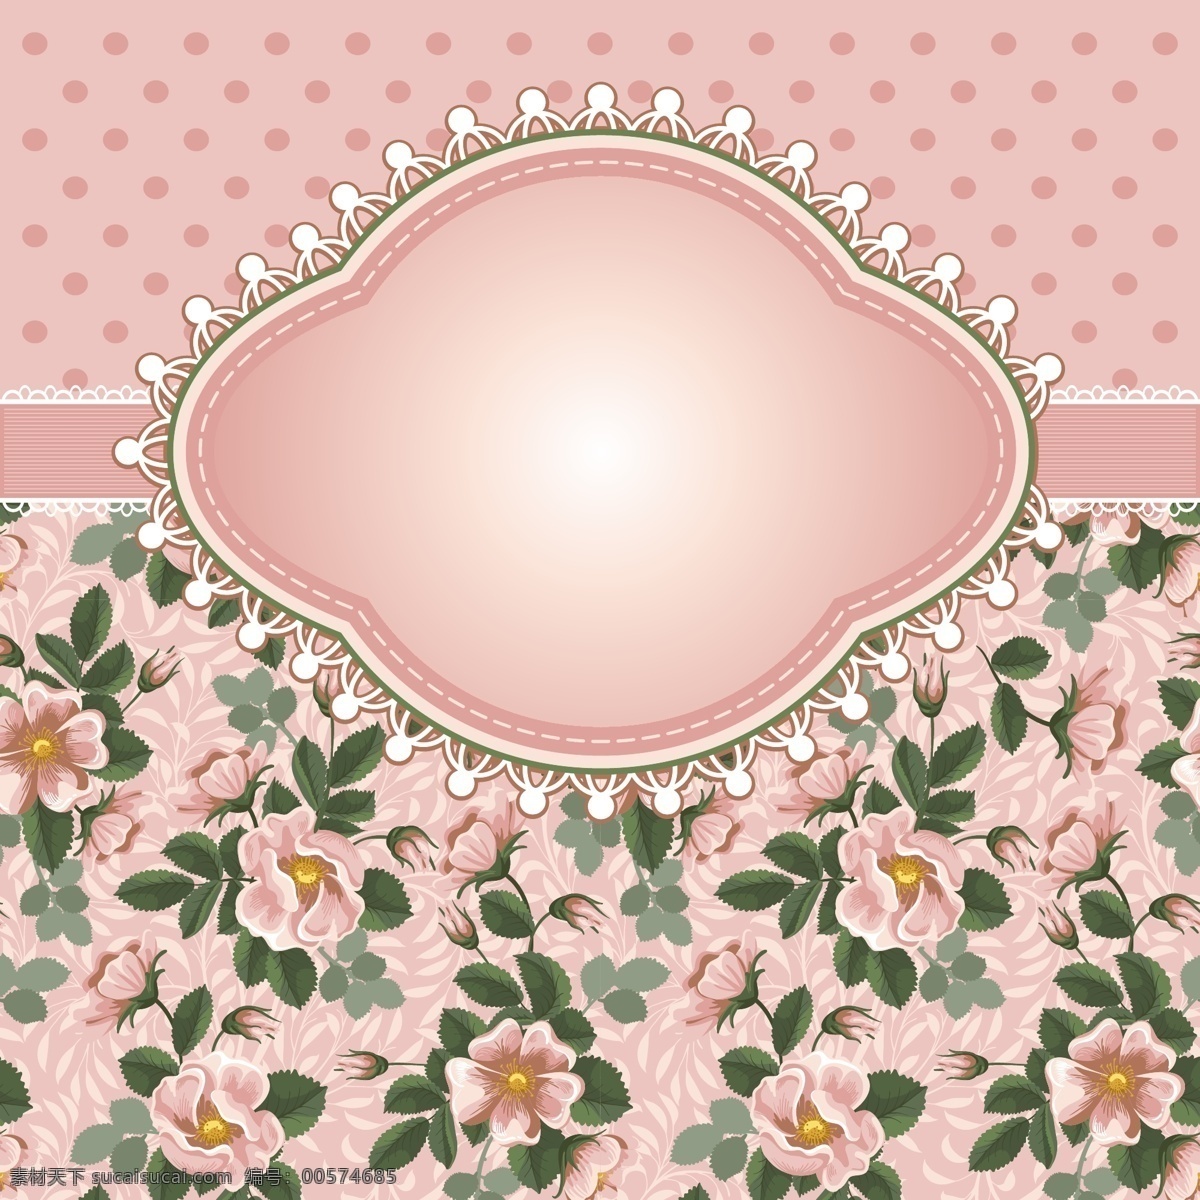 精美 玫瑰 背景 矢量 边框 粉色 花卉 花纹 皇冠 矢量背景 矢量素材 圆点 植物 水玉点 装饰 矢量图 其他矢量图